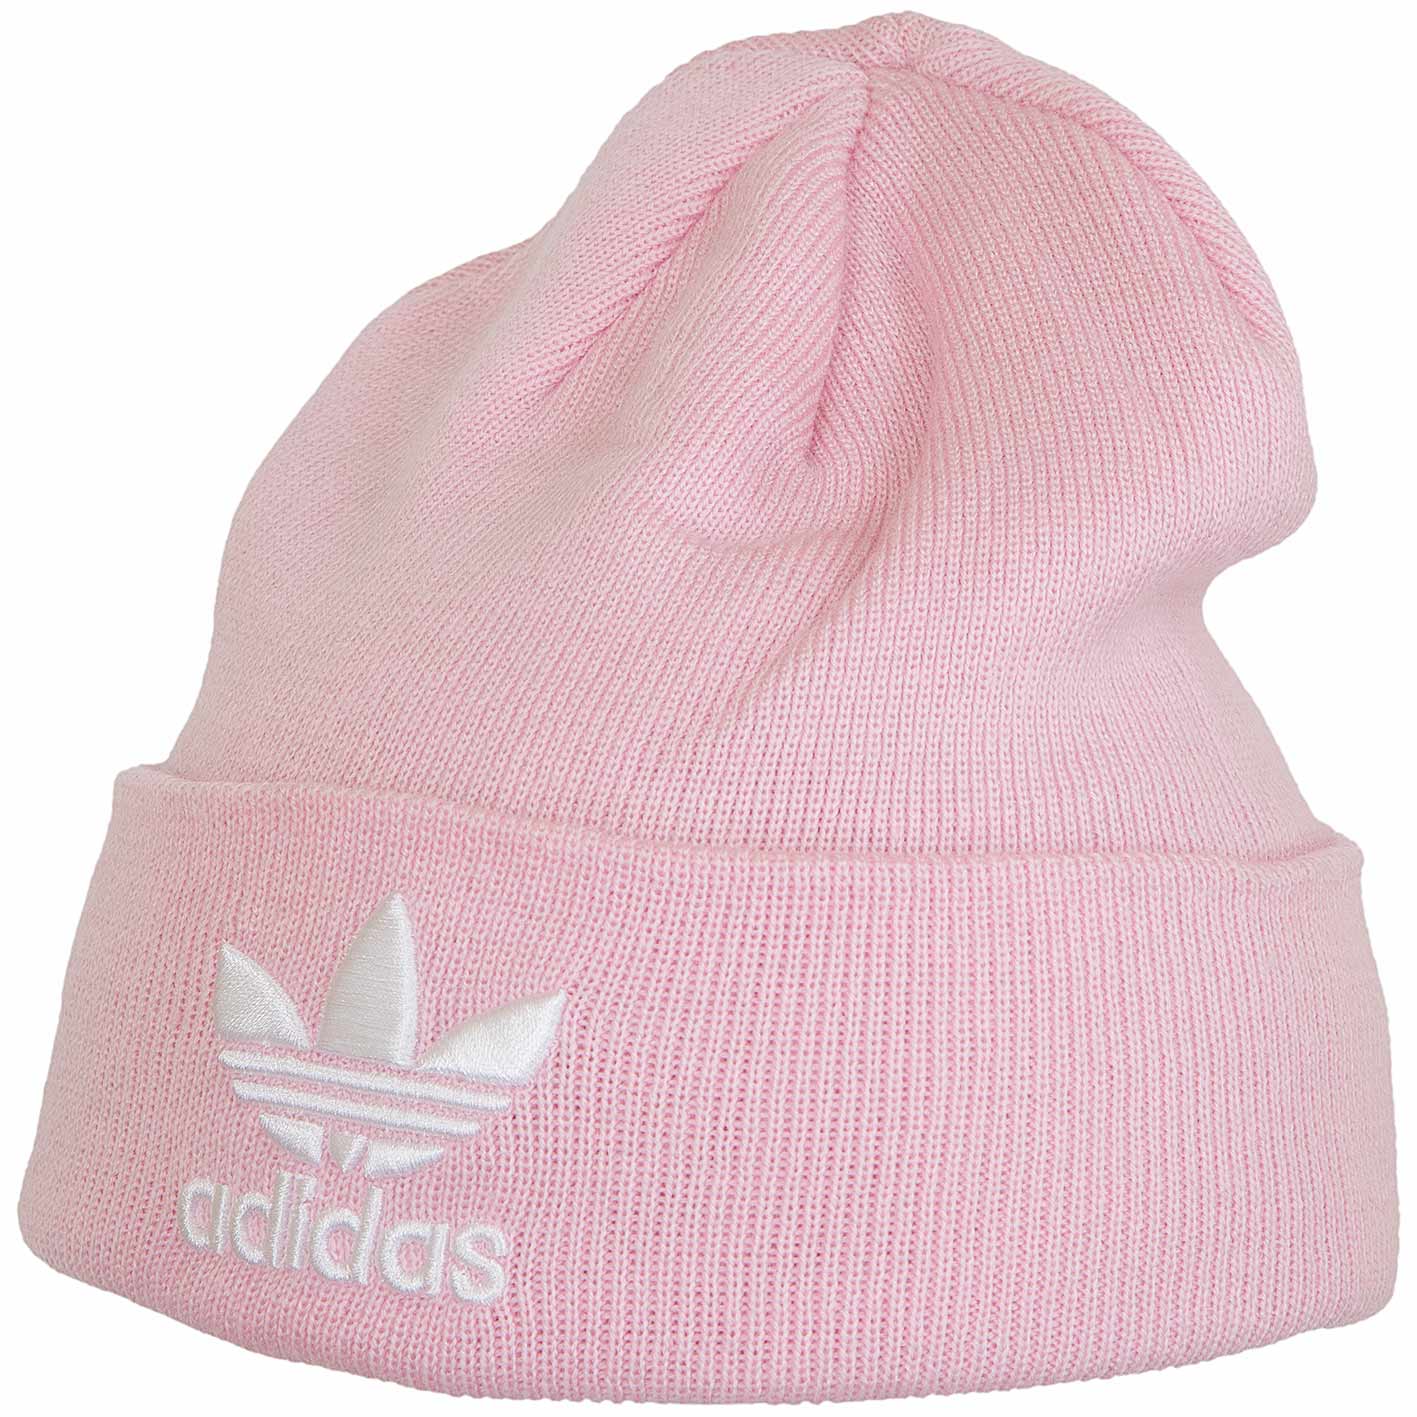 ☆ Adidas Originals Beanie Trefoil pink - hier bestellen!